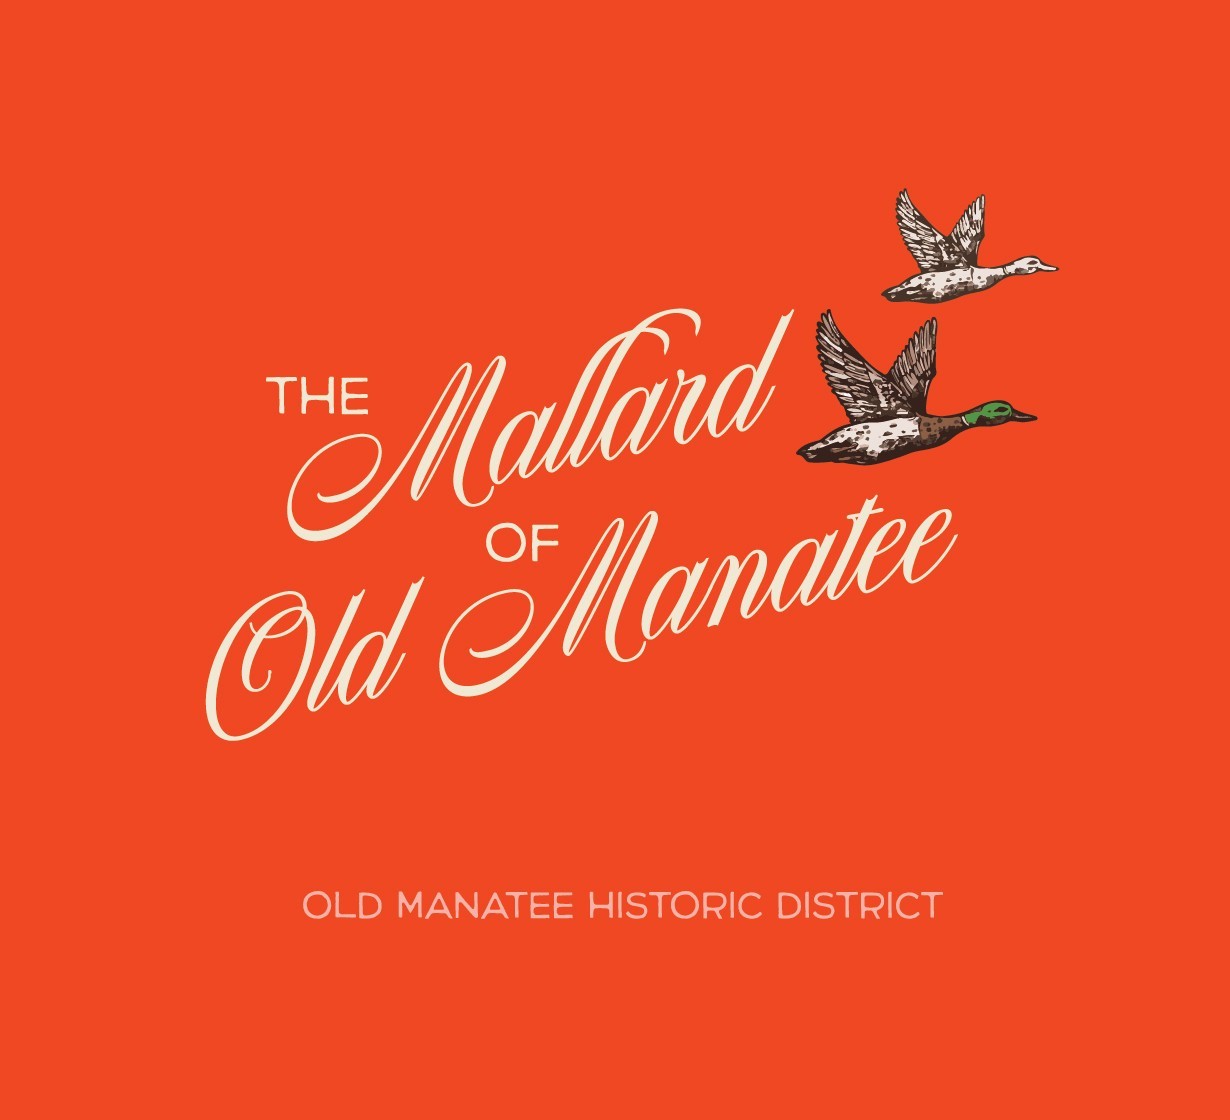 The Mallard of Old Manatee